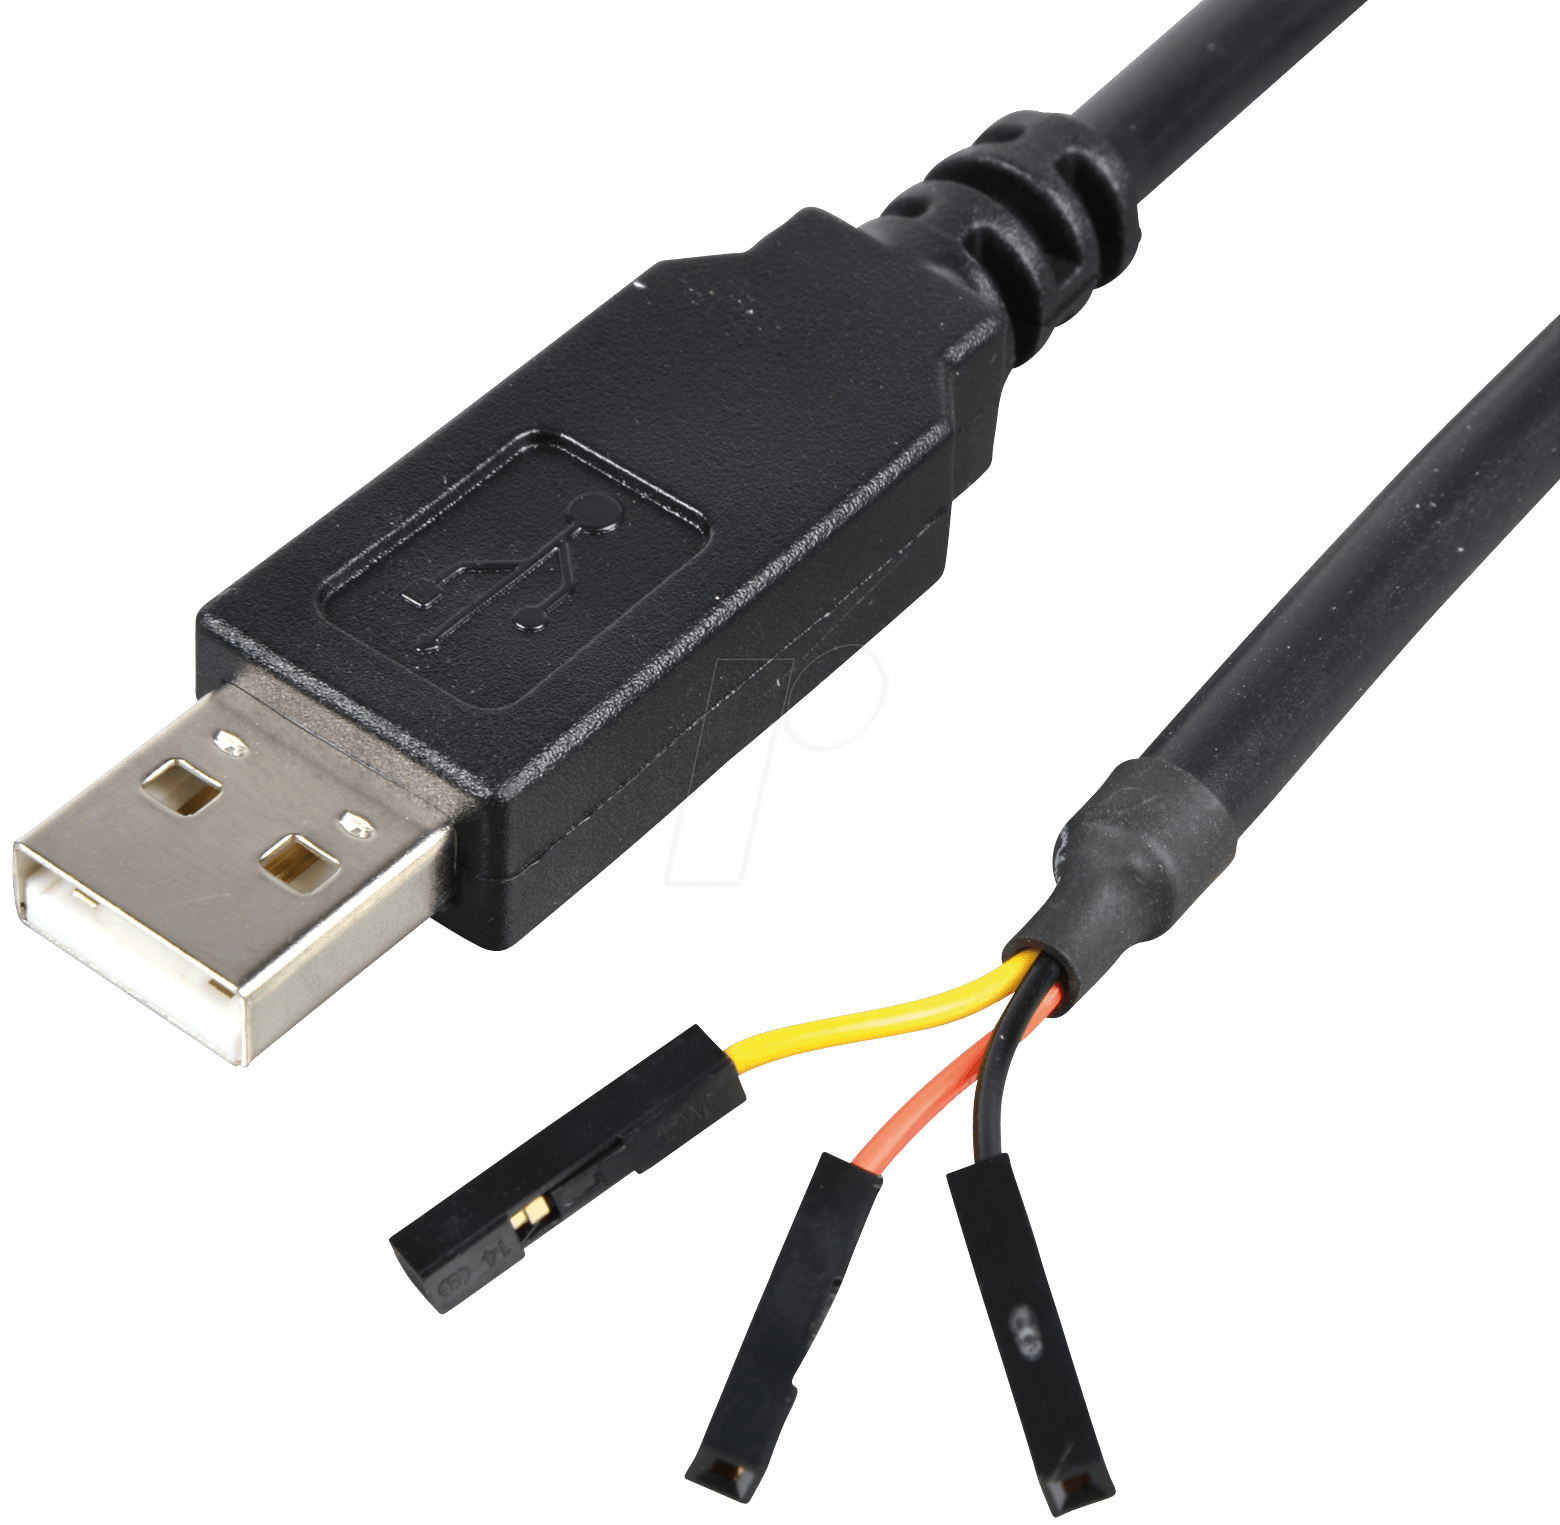 USB дебаг кабель для принтеров и МФУ FT | AliExpress